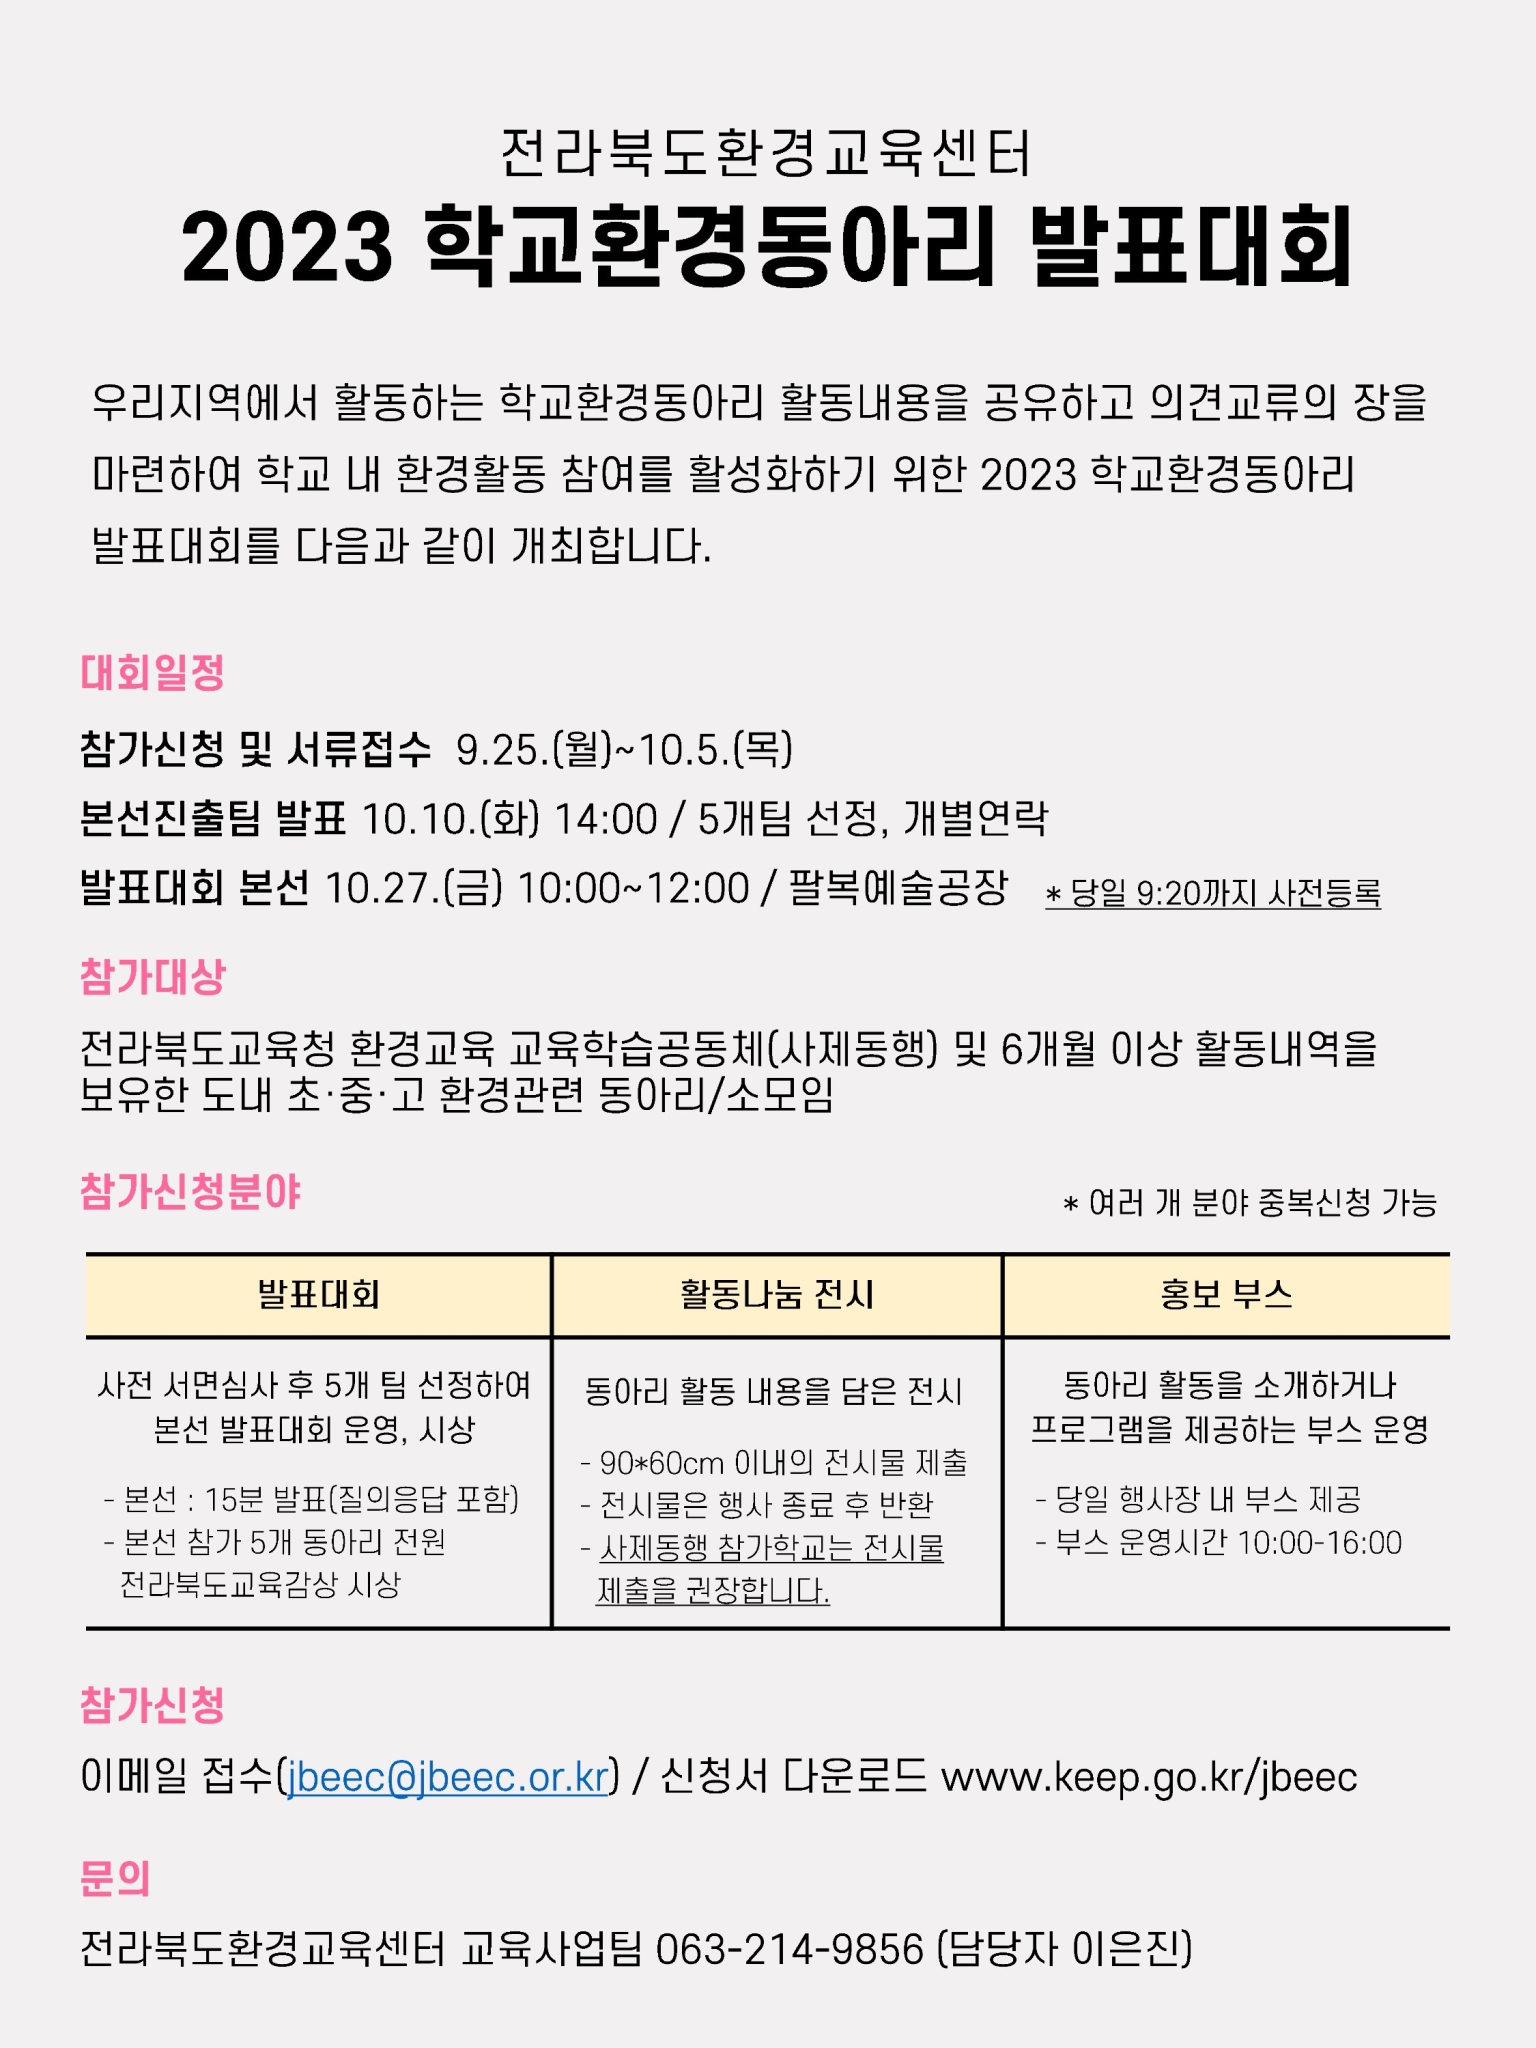 전라북도교육청 민주시민교육과_행사안내 포스터